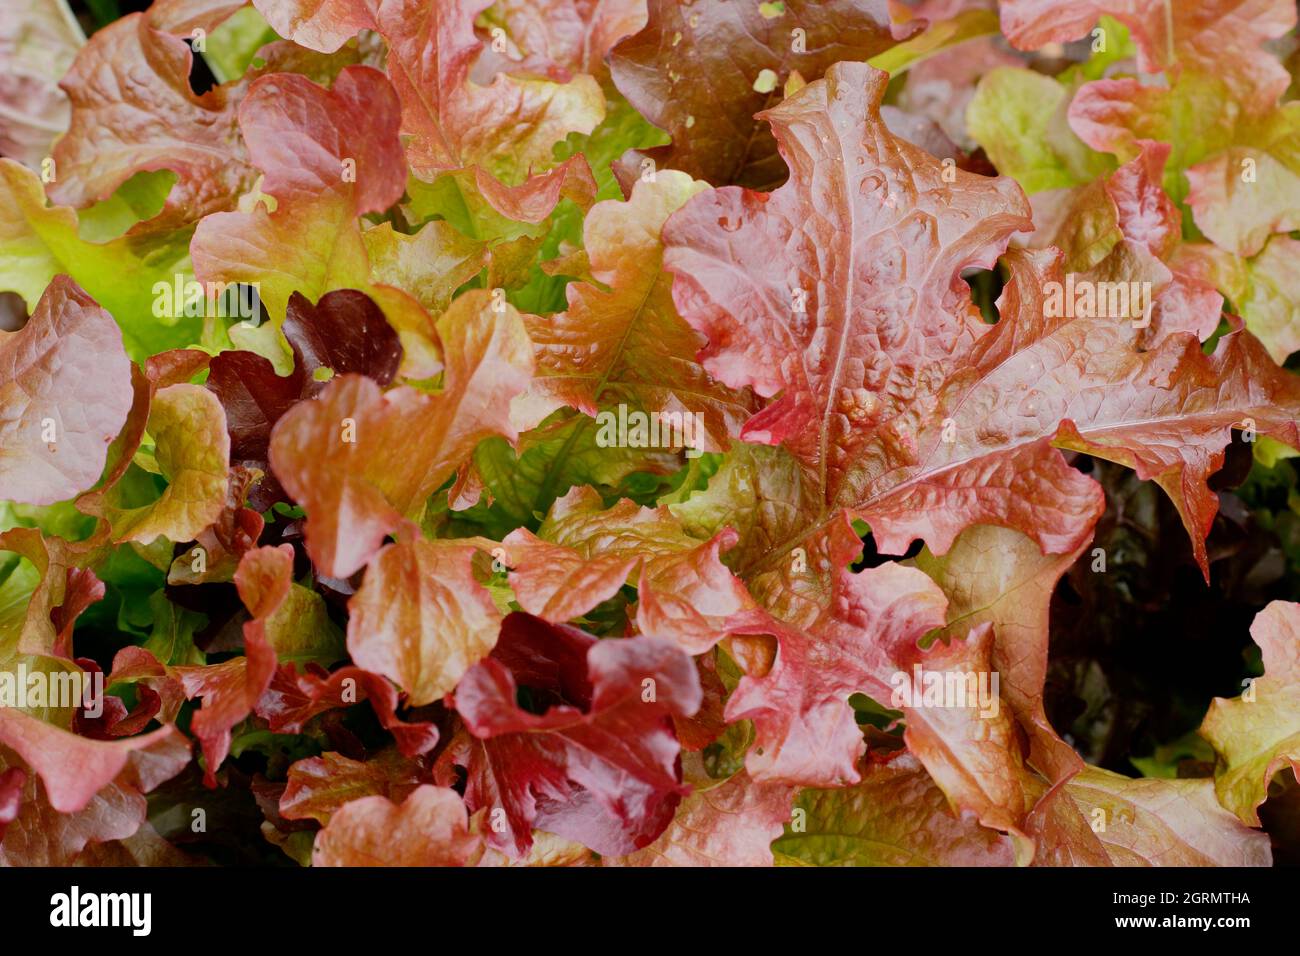 Couper et revenir salade. Lactuca sativa 'Red Salad Bowl' feuilles de laitue en vrac présentant des feuilles de bronze caractéristiques. ROYAUME-UNI Banque D'Images